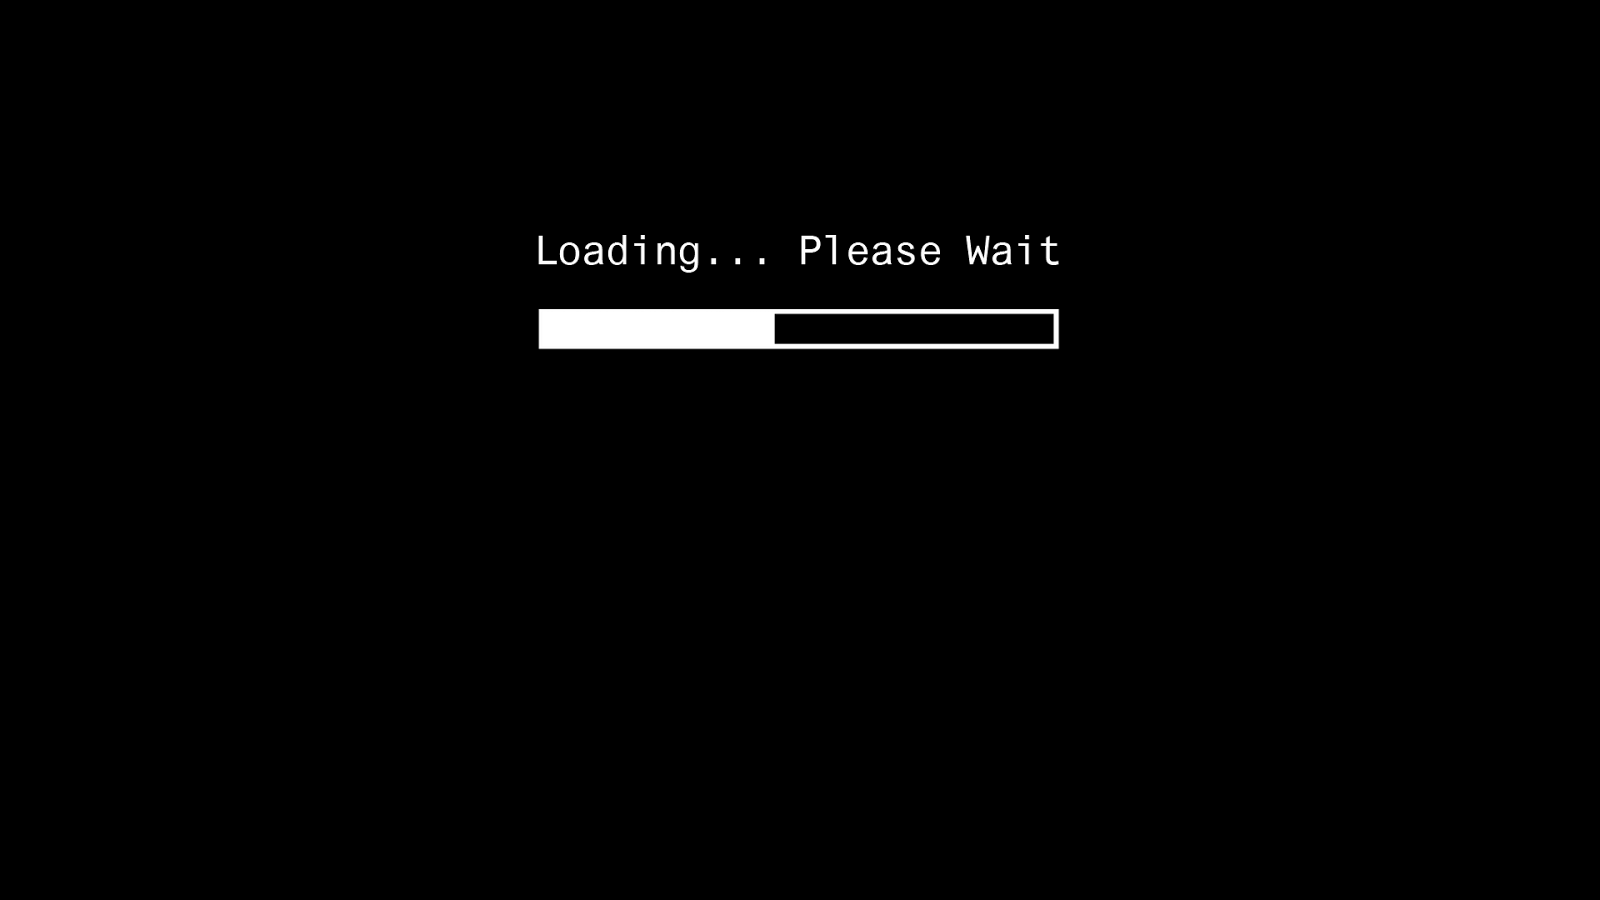 Loading Please Wait